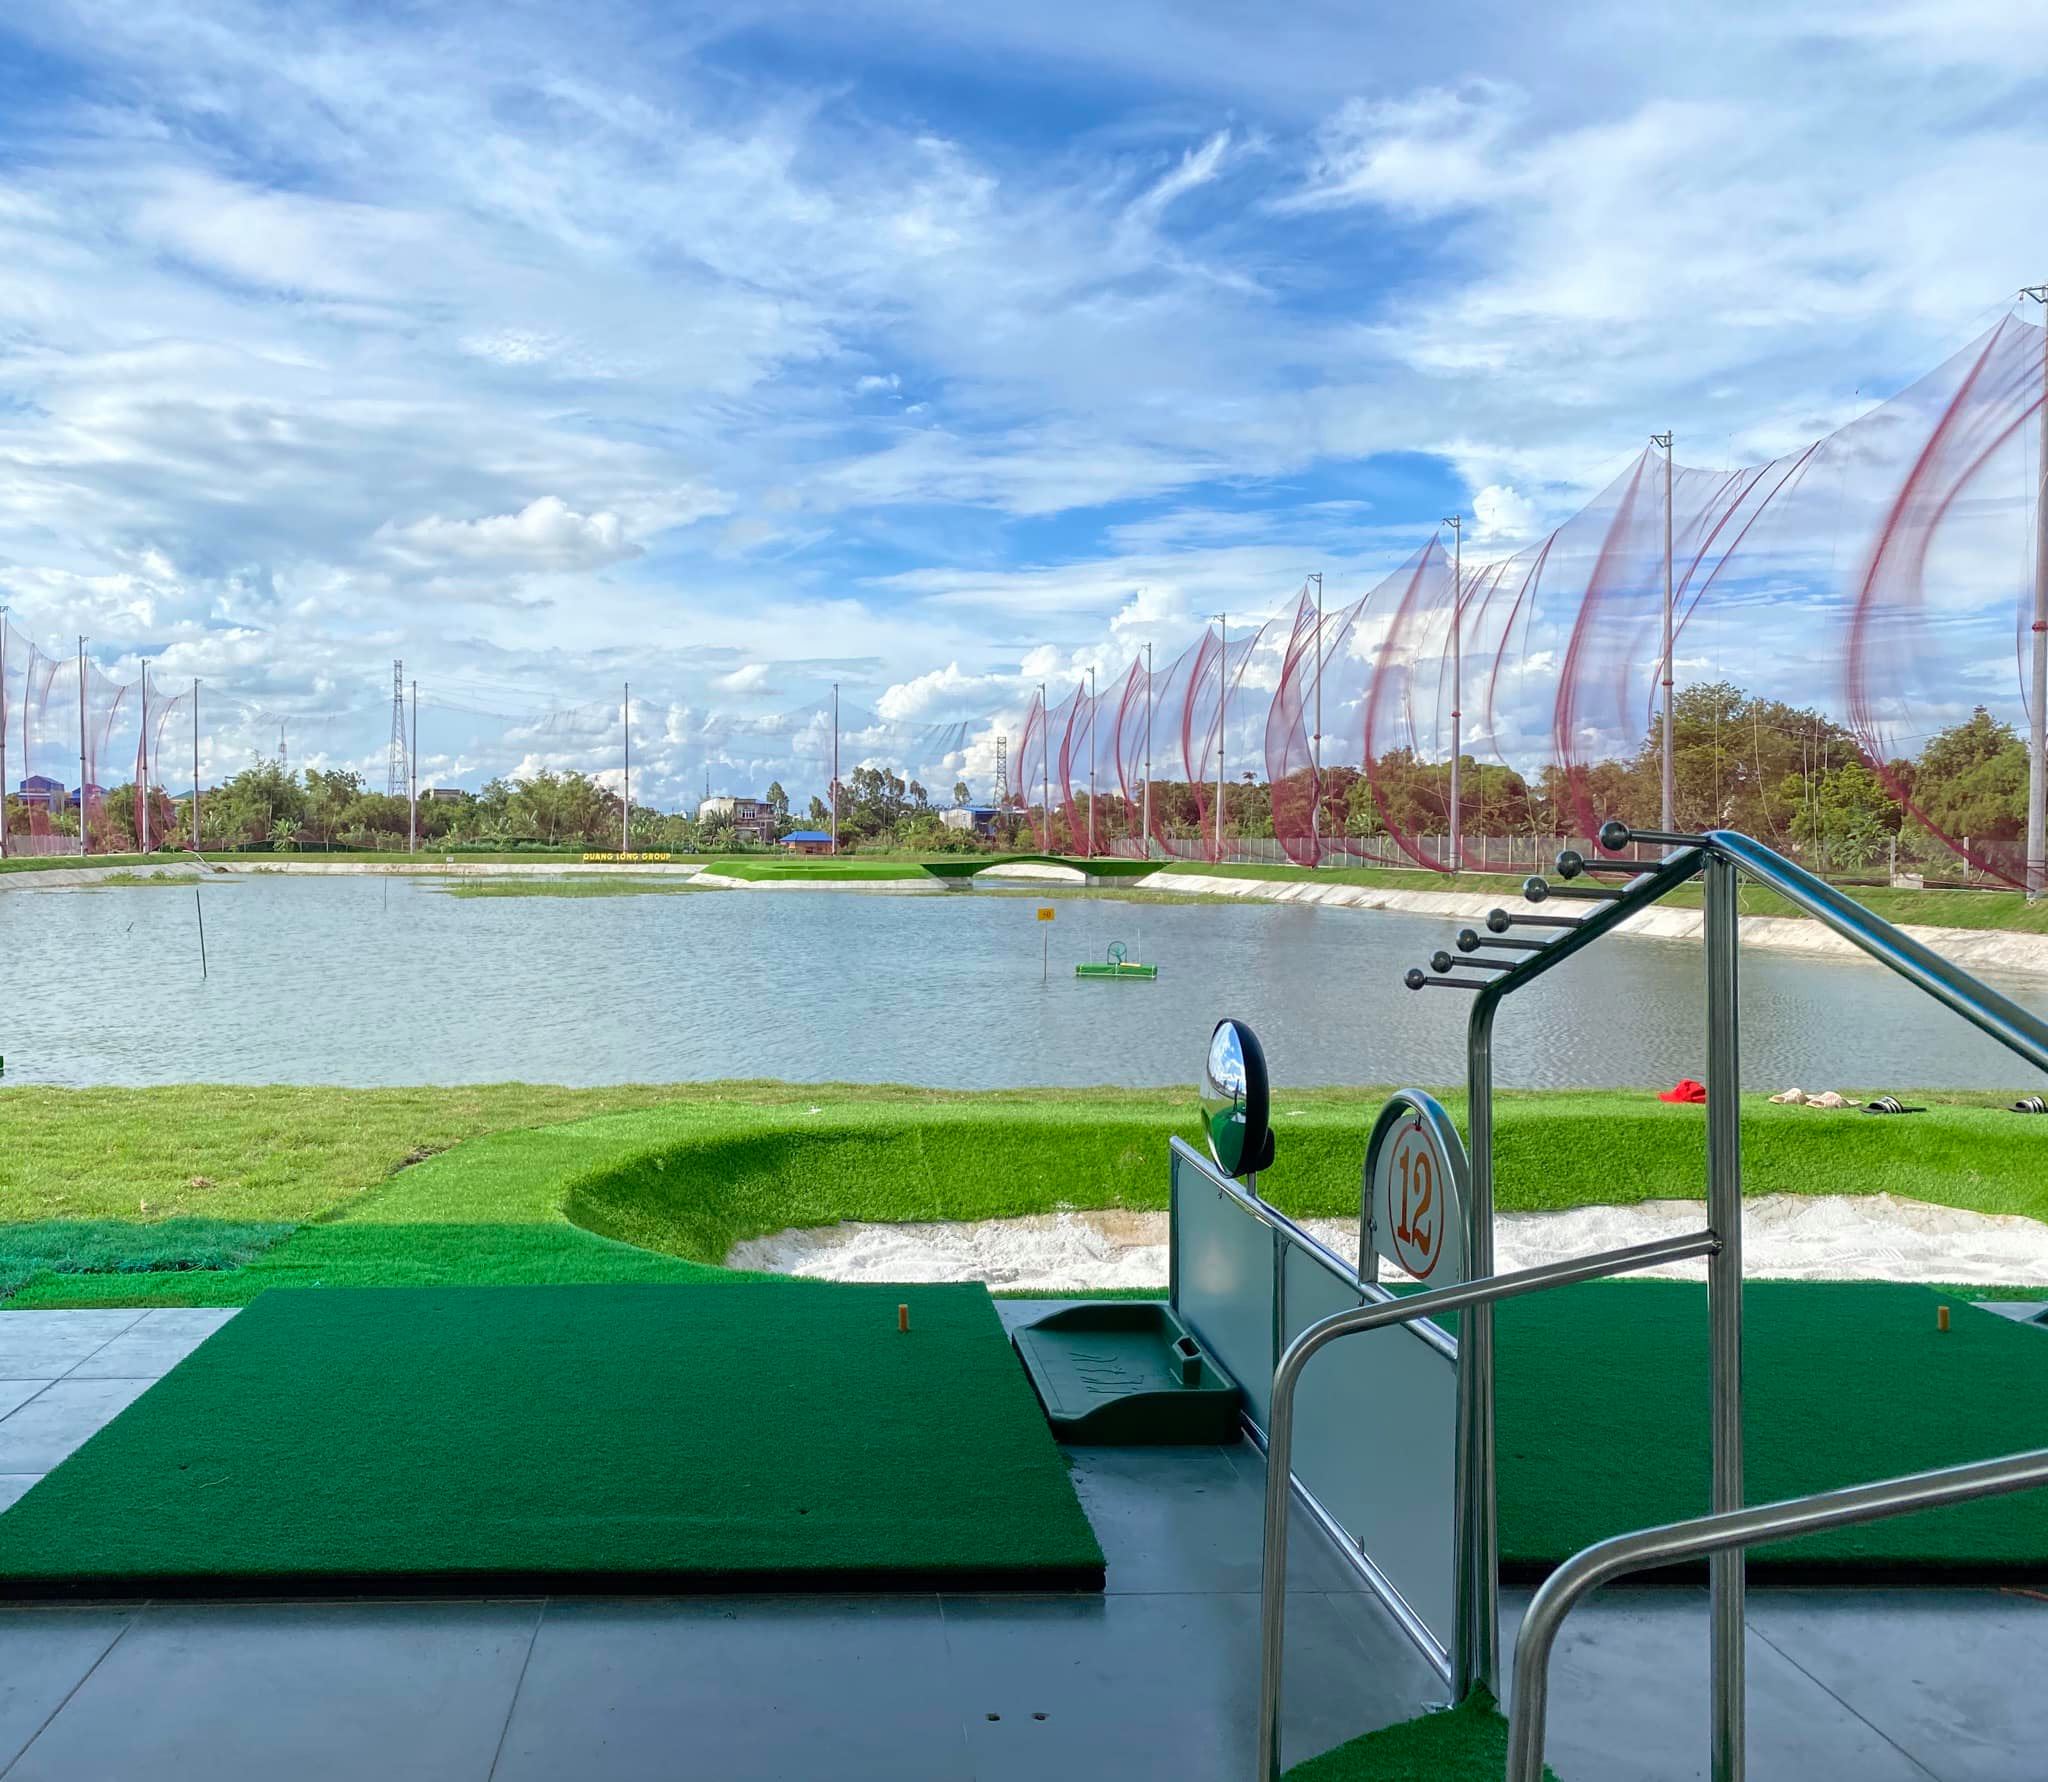 Sân golf ở Nam Định quý golfer đã từng trải nghiệm